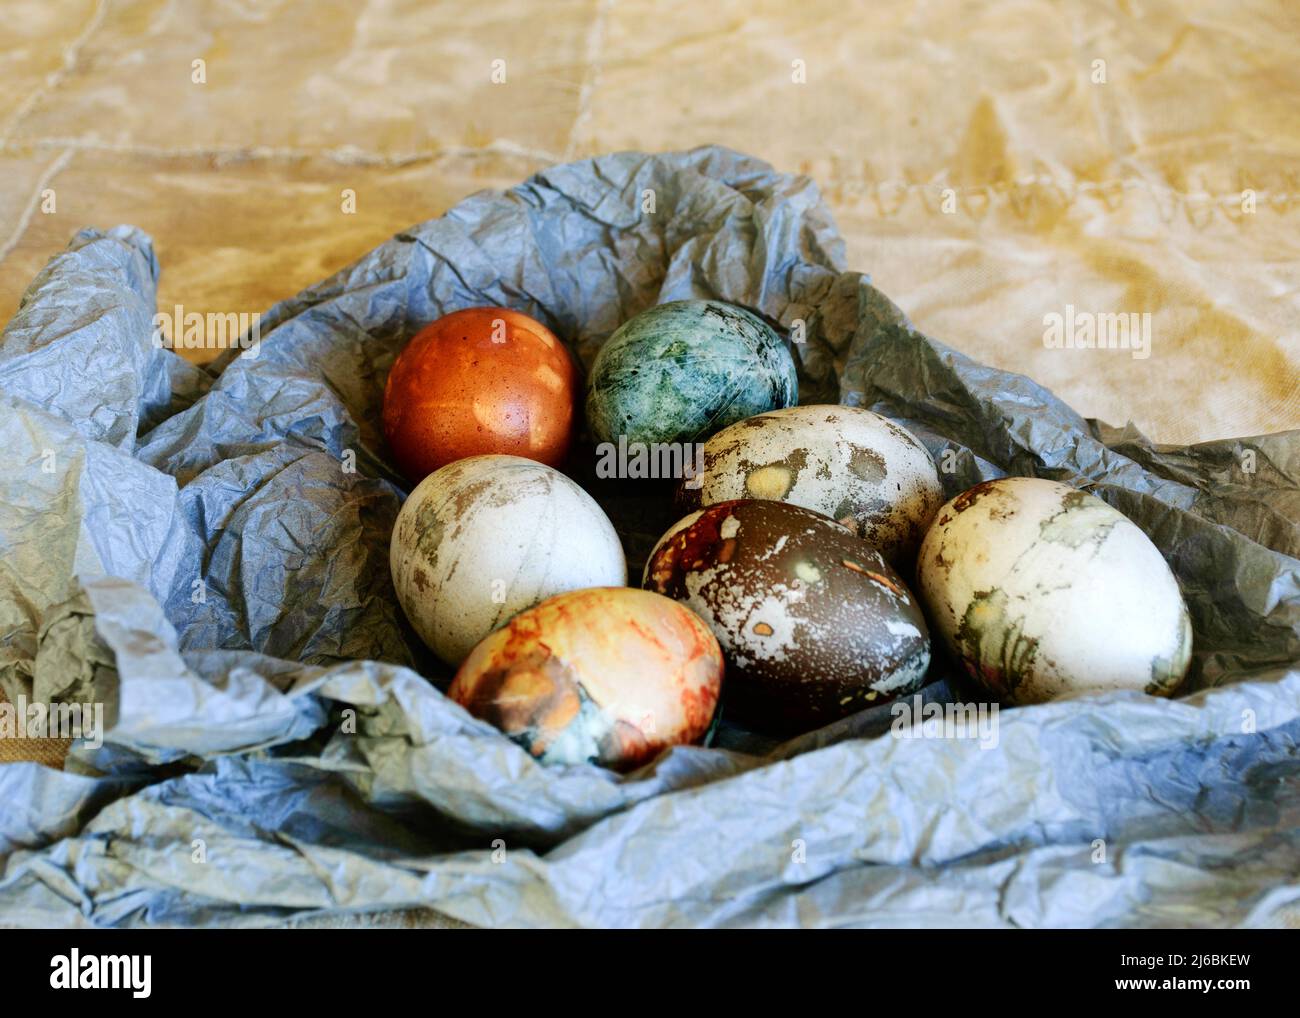 La vita morta con un gruppo di uova colorate, il concetto di celebrare la Pasqua, la festa del mondo cristiano in primavera Foto Stock